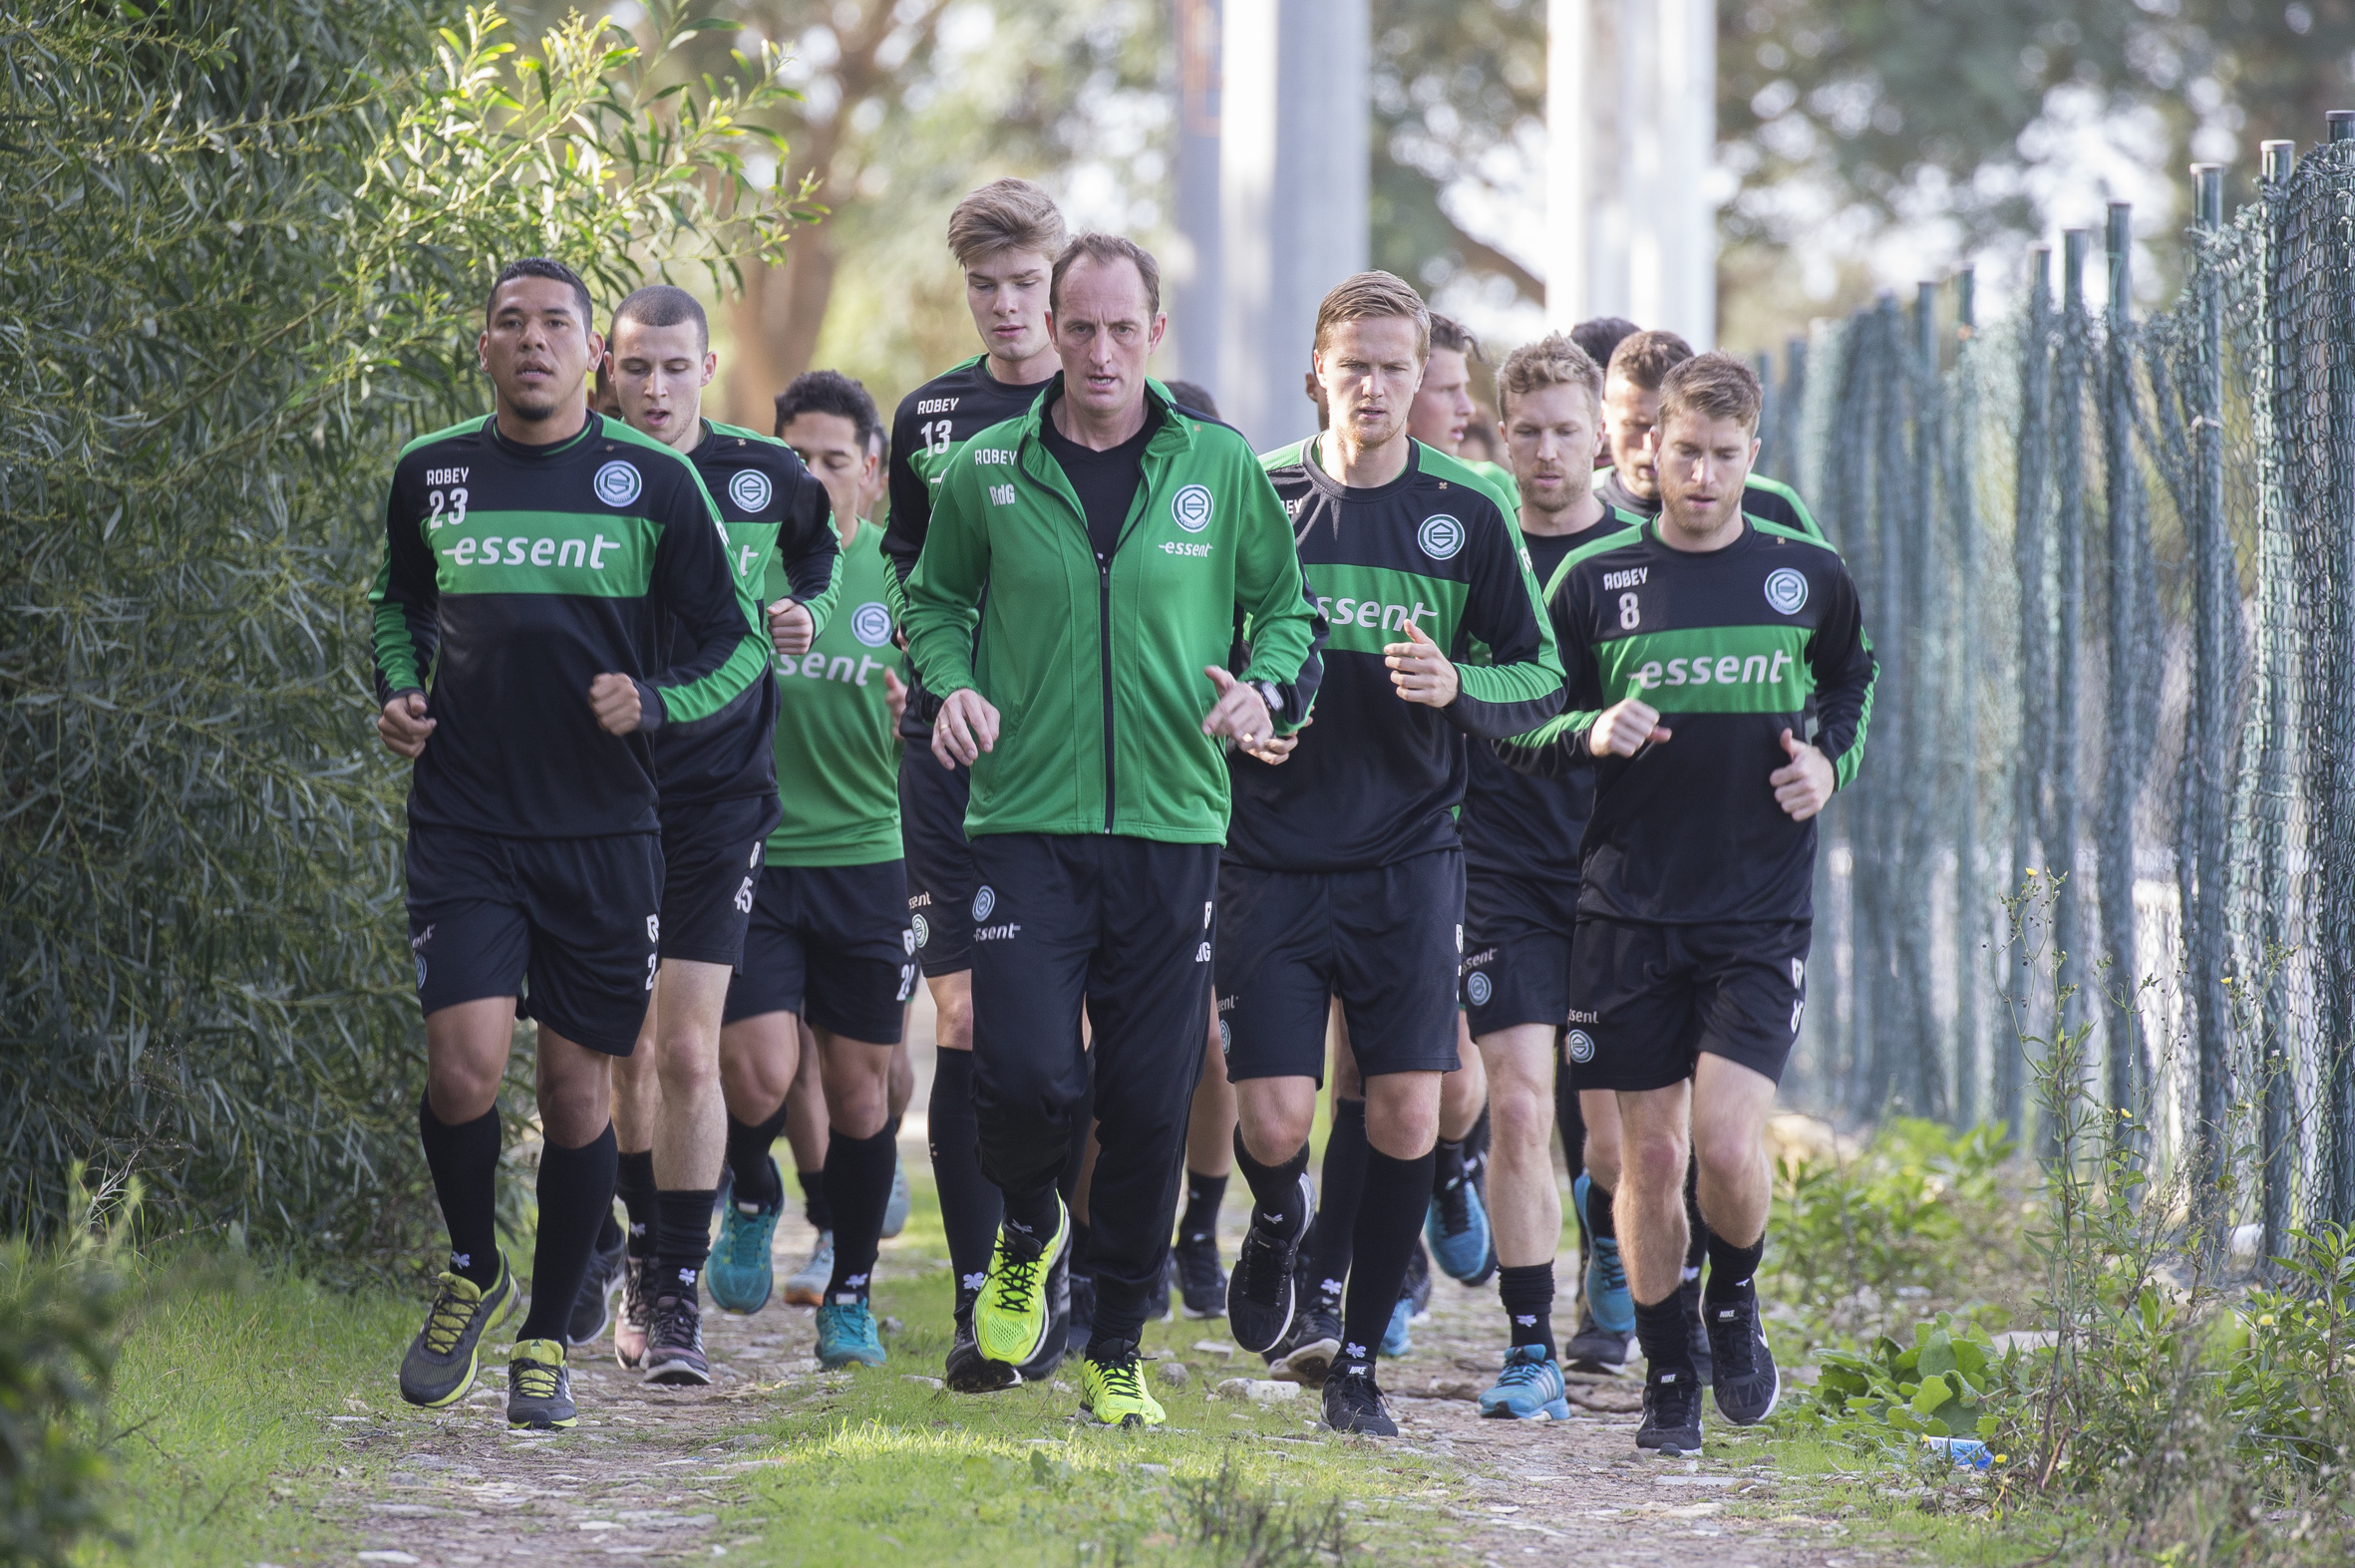 FC Groningen werkte zondag een laatste training af in Costa Ballena en keerde daarna terug naar Nederland. Daar bereidt de selectie zich onder aanvoering van trainer Erwin van de Looi voor op de hervatting van de competitie. Zondag komt FC Utrecht op bezoek.